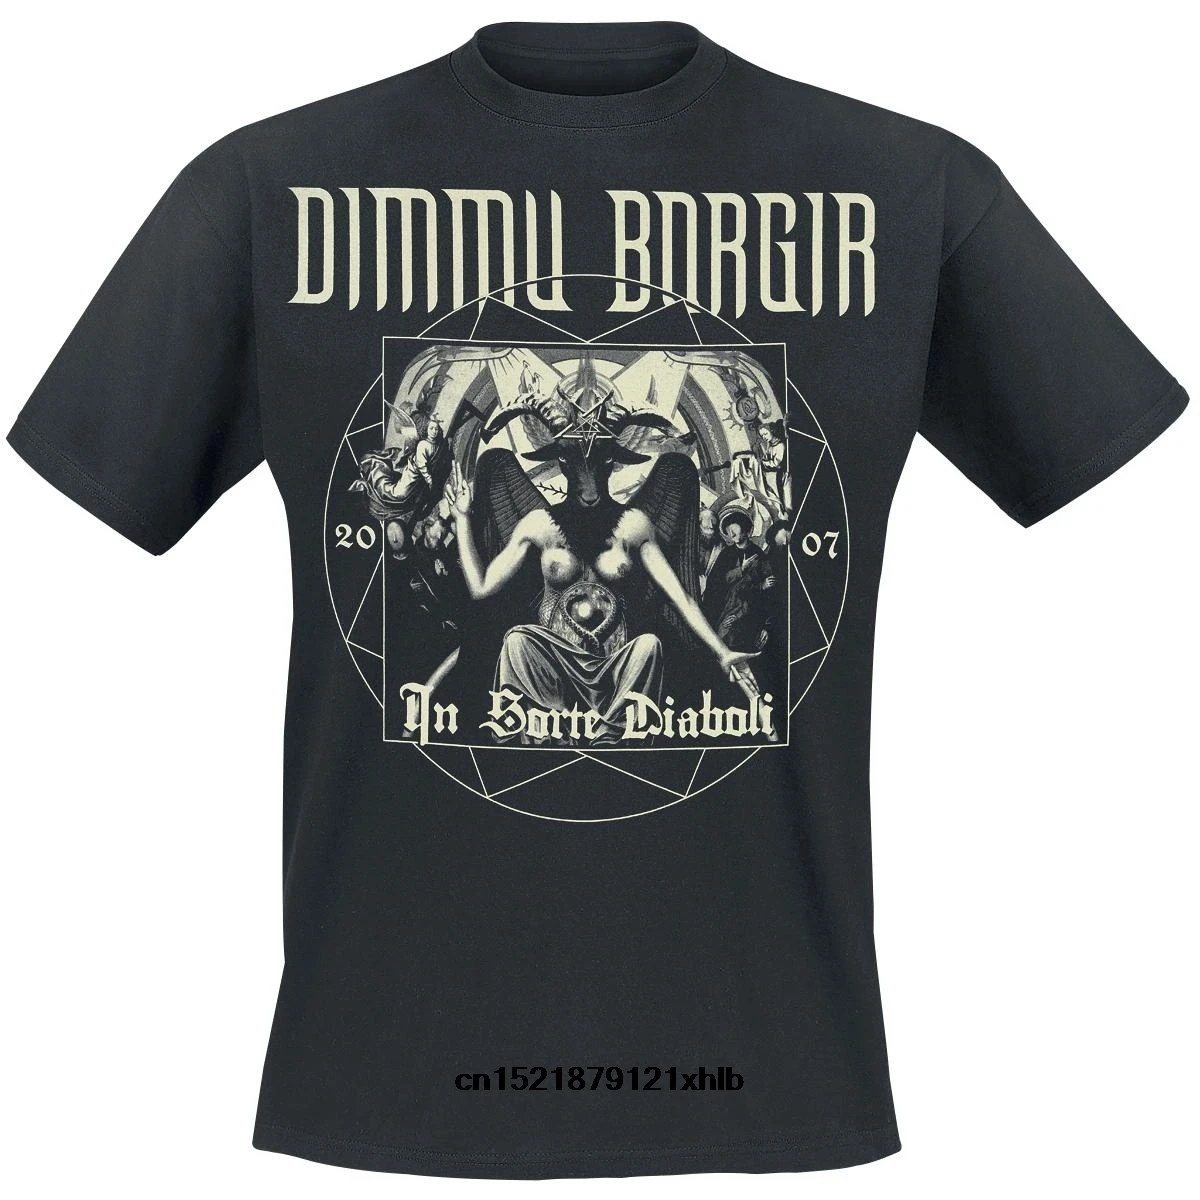 Men T shirt In Sorte Diaboli Anniversary Dimmu Borgir funny t shirt tshirt women men tshirt women t shirt|T-Shirts| - AliExpress